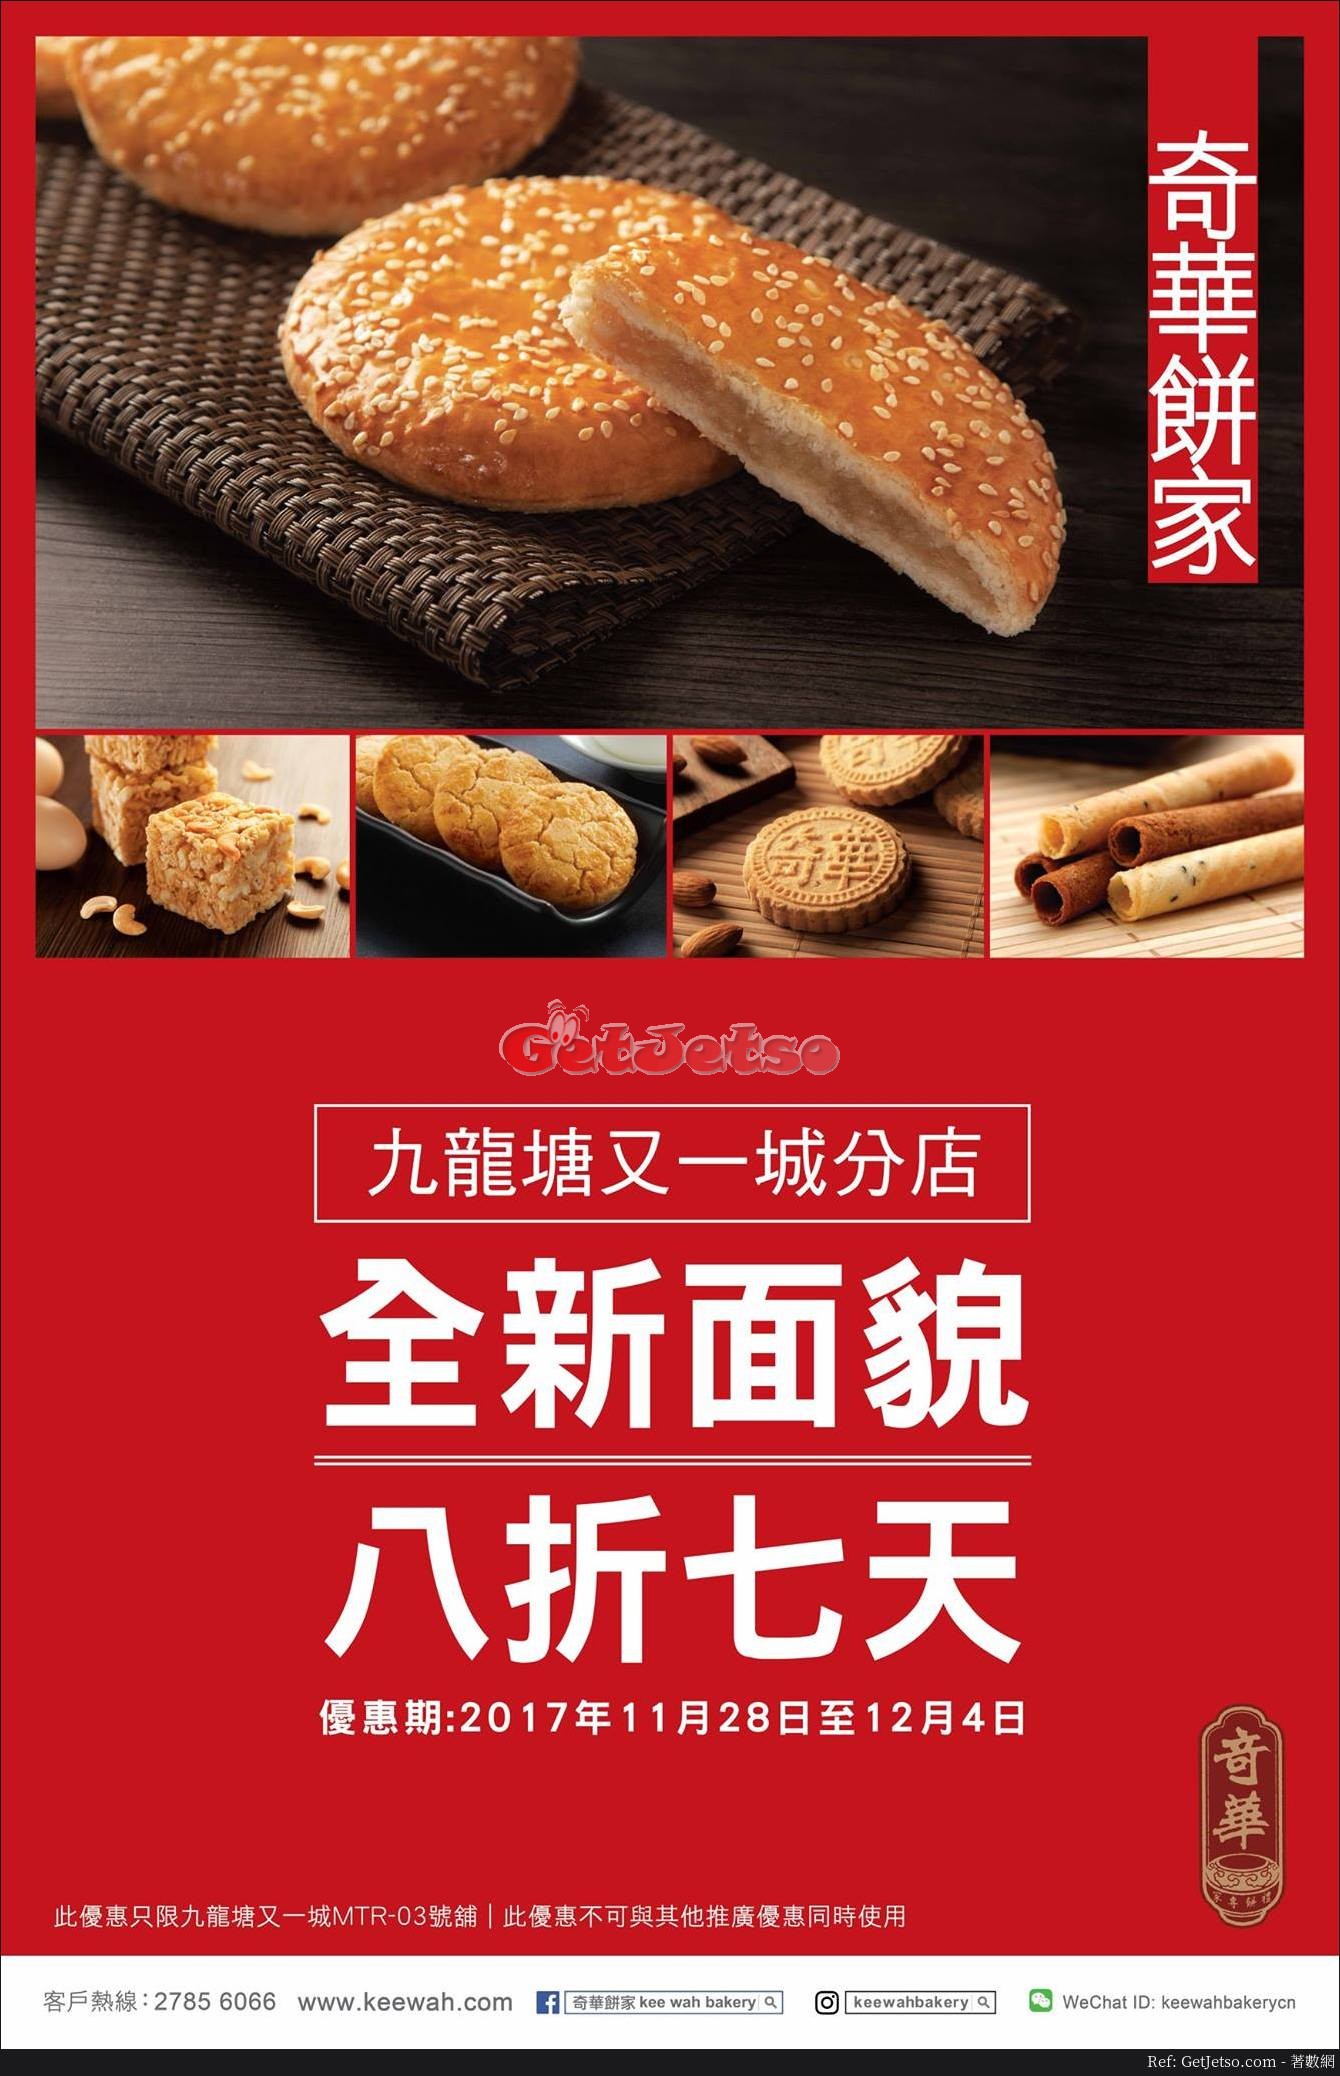 奇華餅家8折開幕優惠@又一城店(至17年12月4日)圖片1